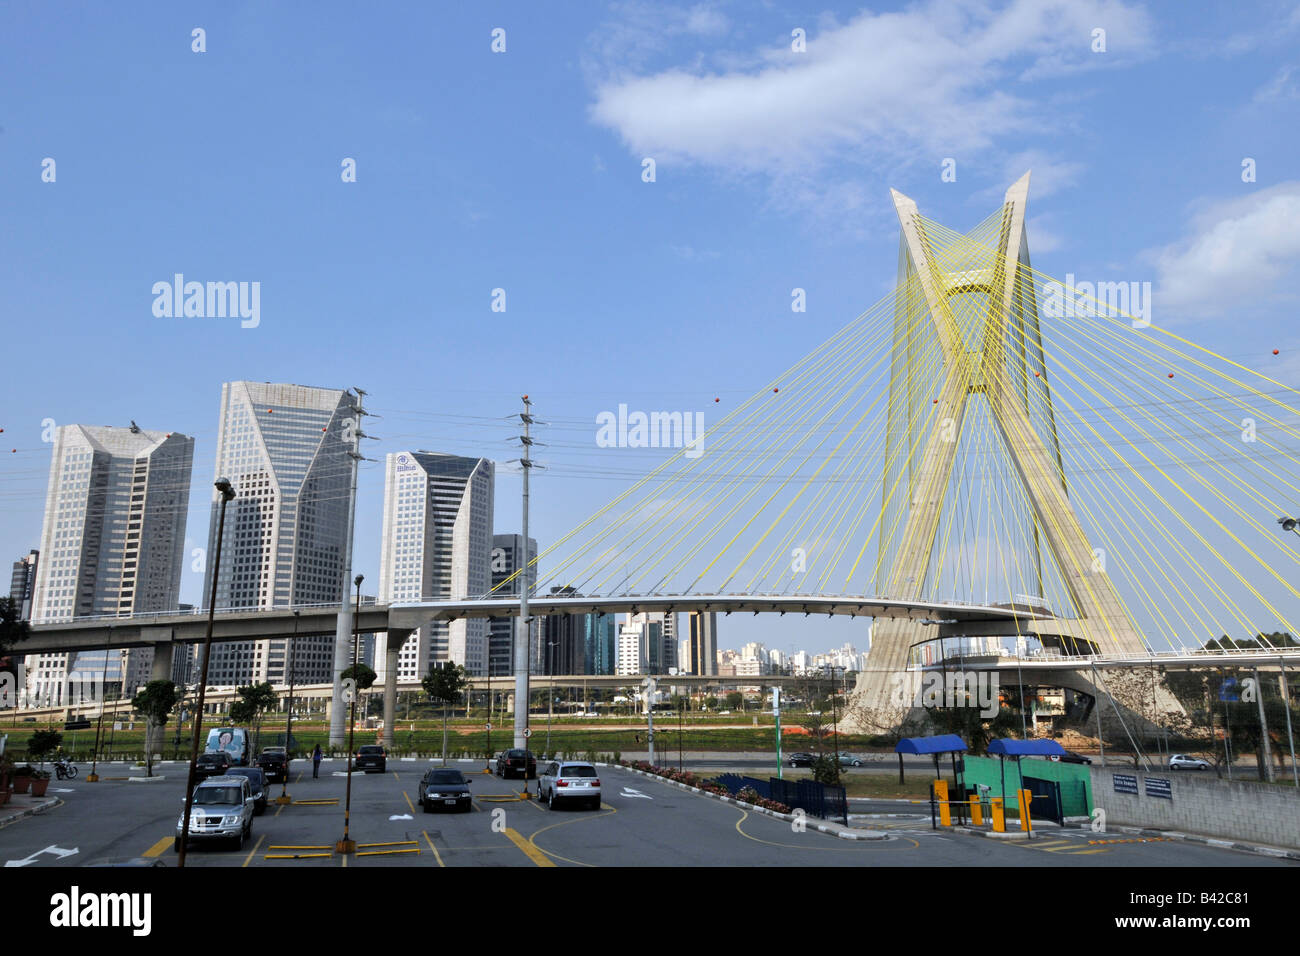 Octavio Frias Hängebrücke Sao Paulo Brasilien Stockfoto